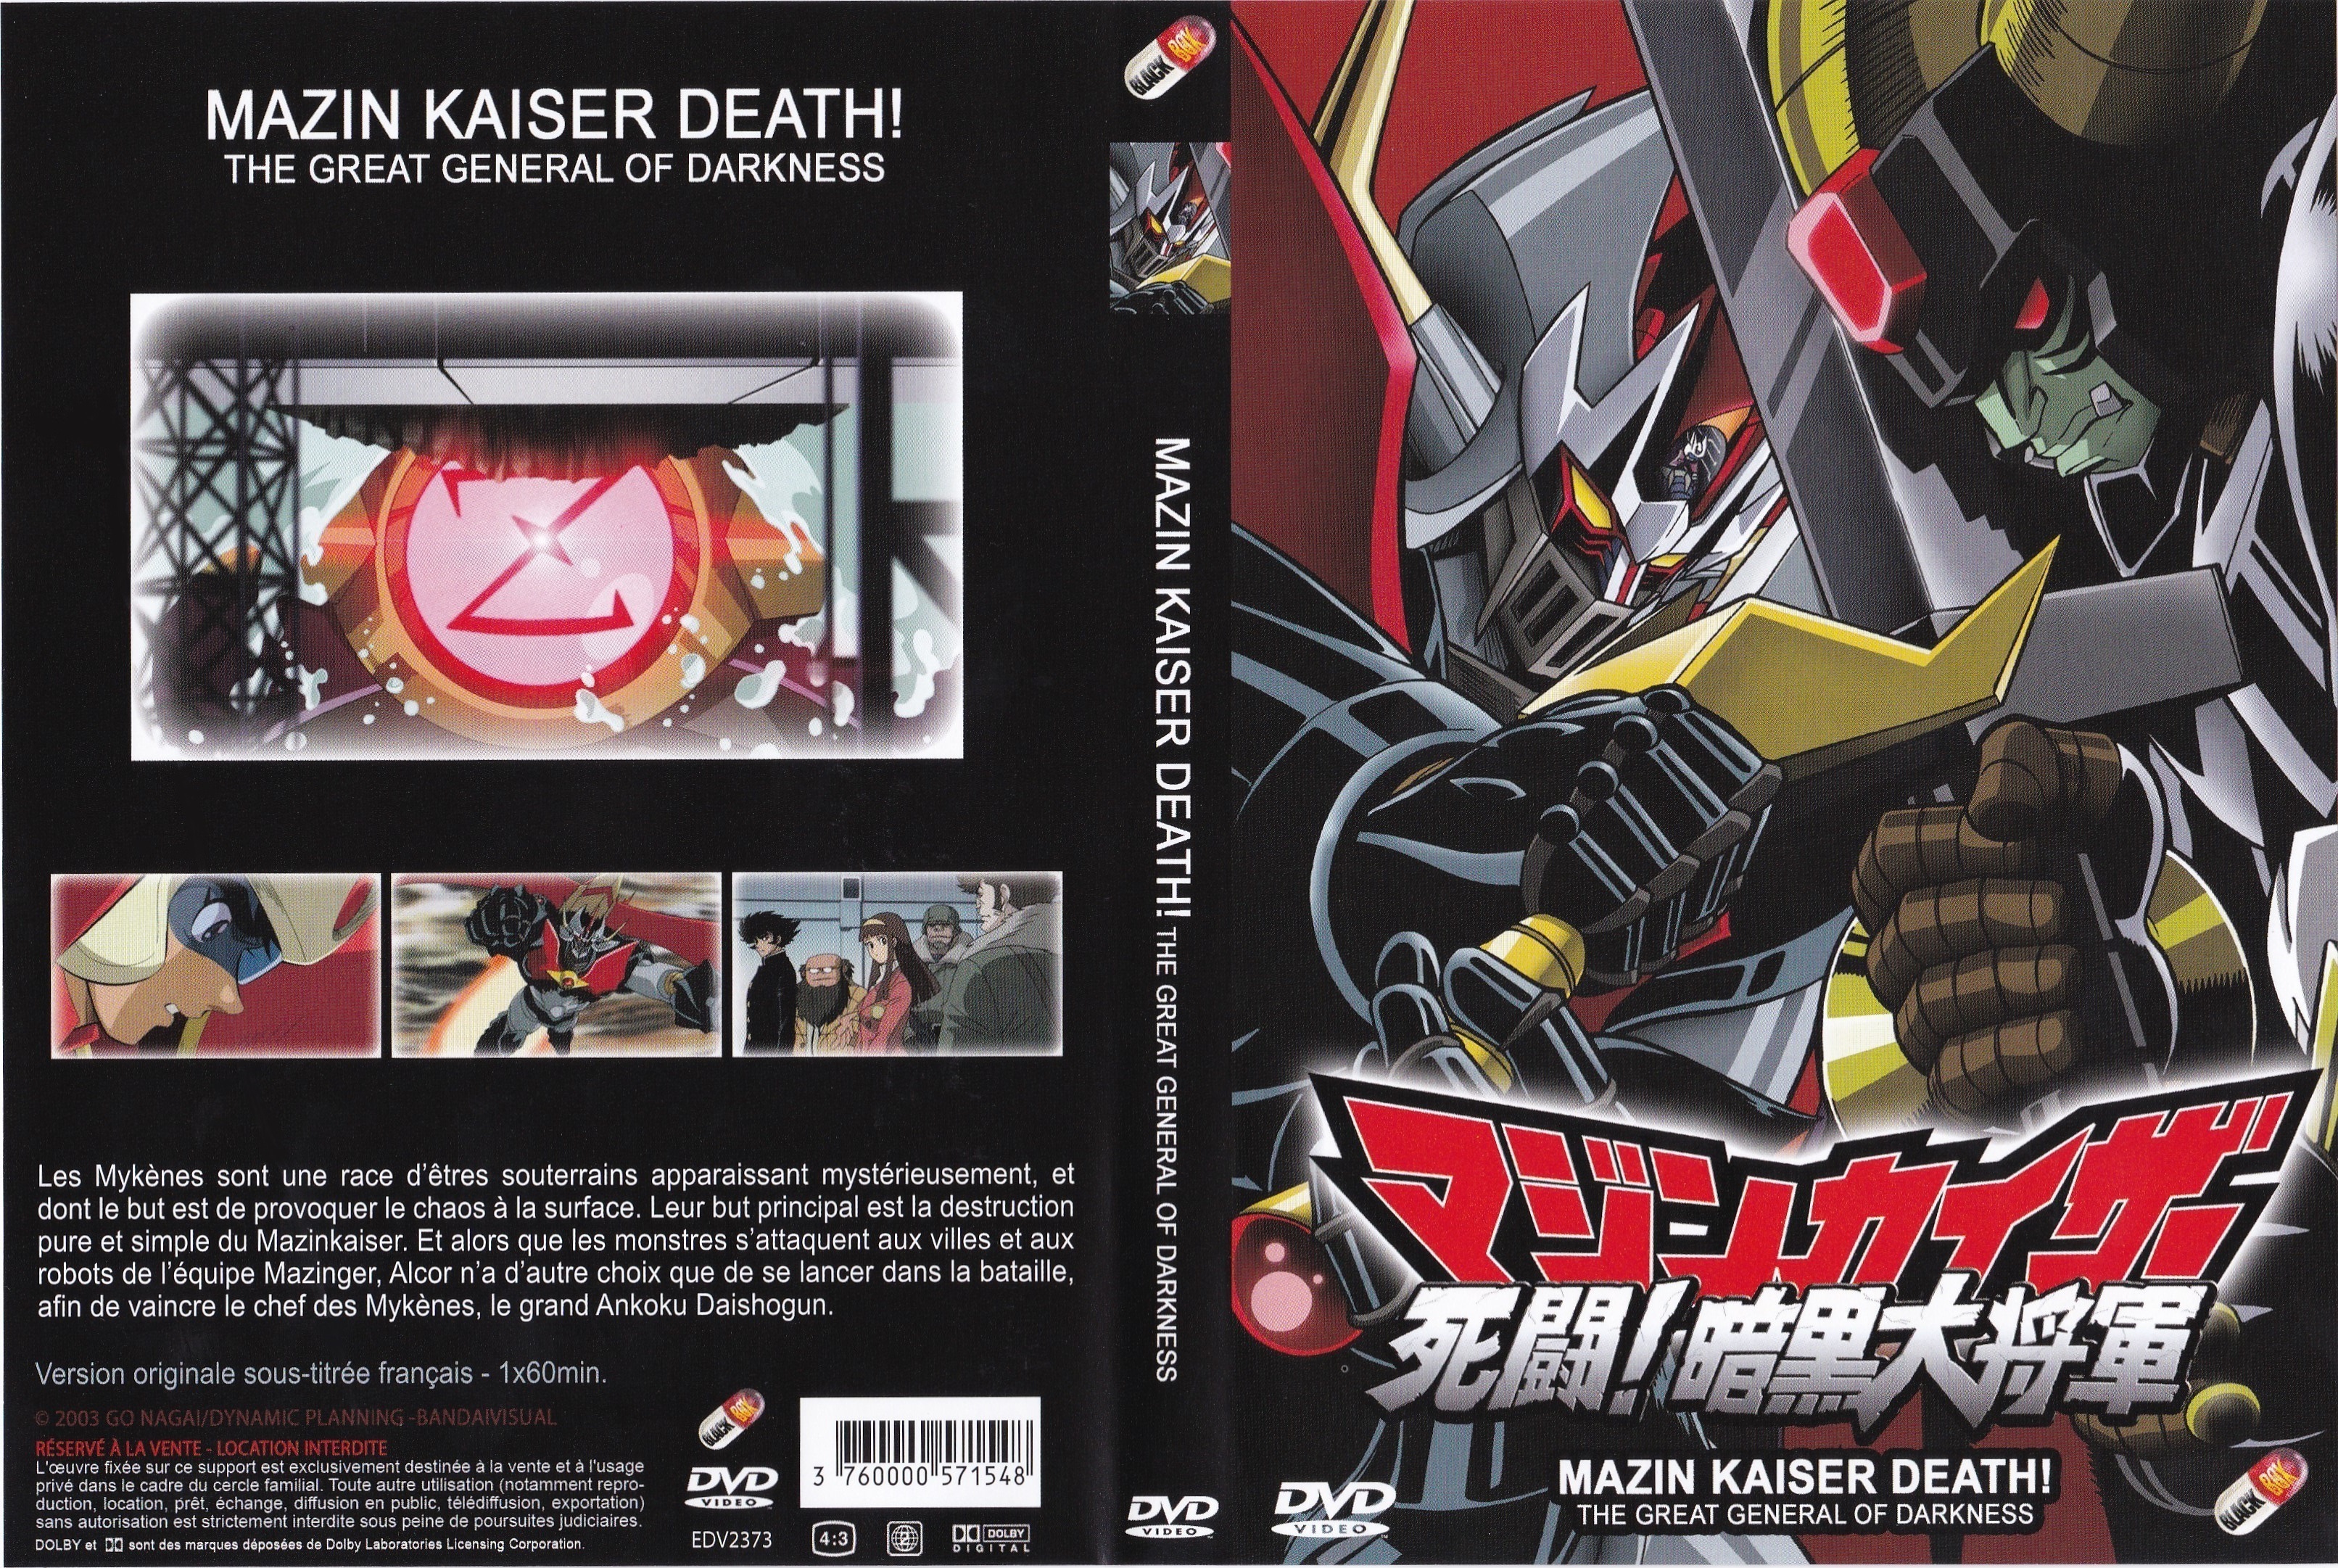 Jaquette DVD Mazin kaiser Death!